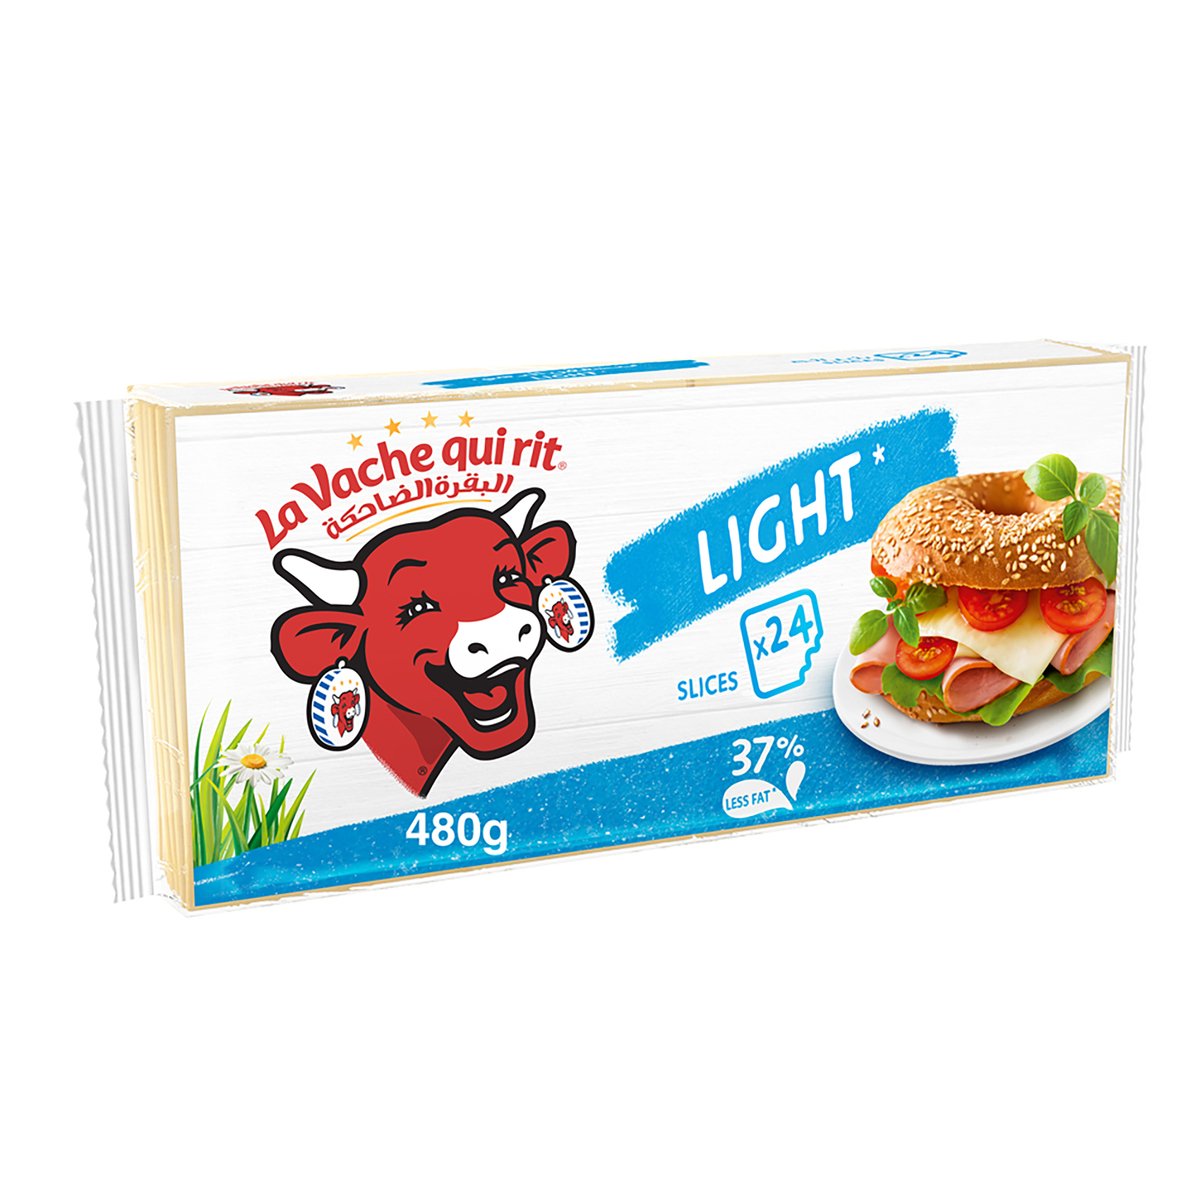 La Vache qui rit Light Cheese Slices 24 Slices 480g